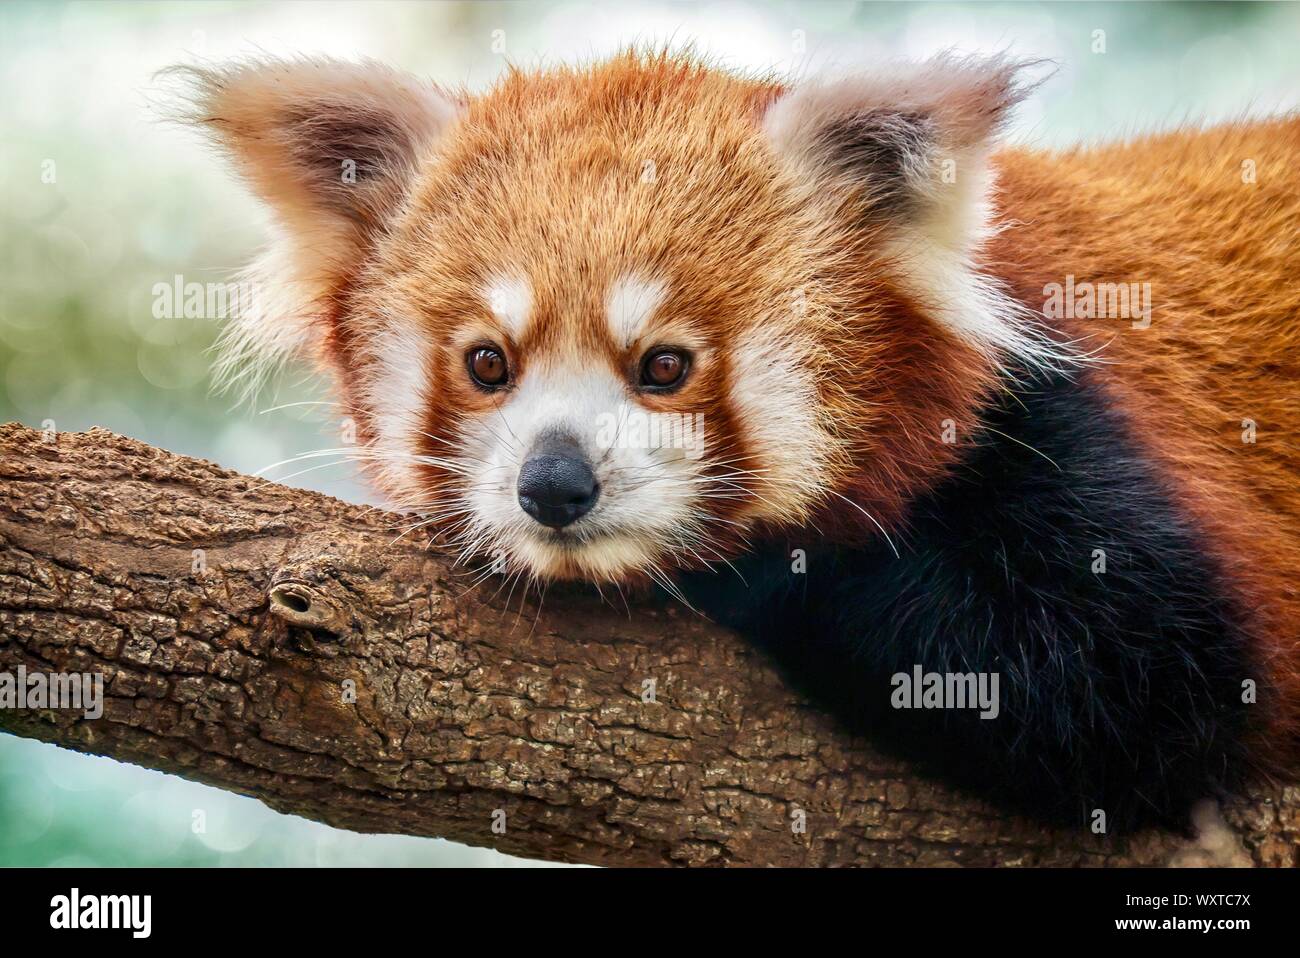 Un close-up portrait of a cute panda rouge (Ailurus fulgens) Amérique latine - détente sur une branche d'arbre. Banque D'Images